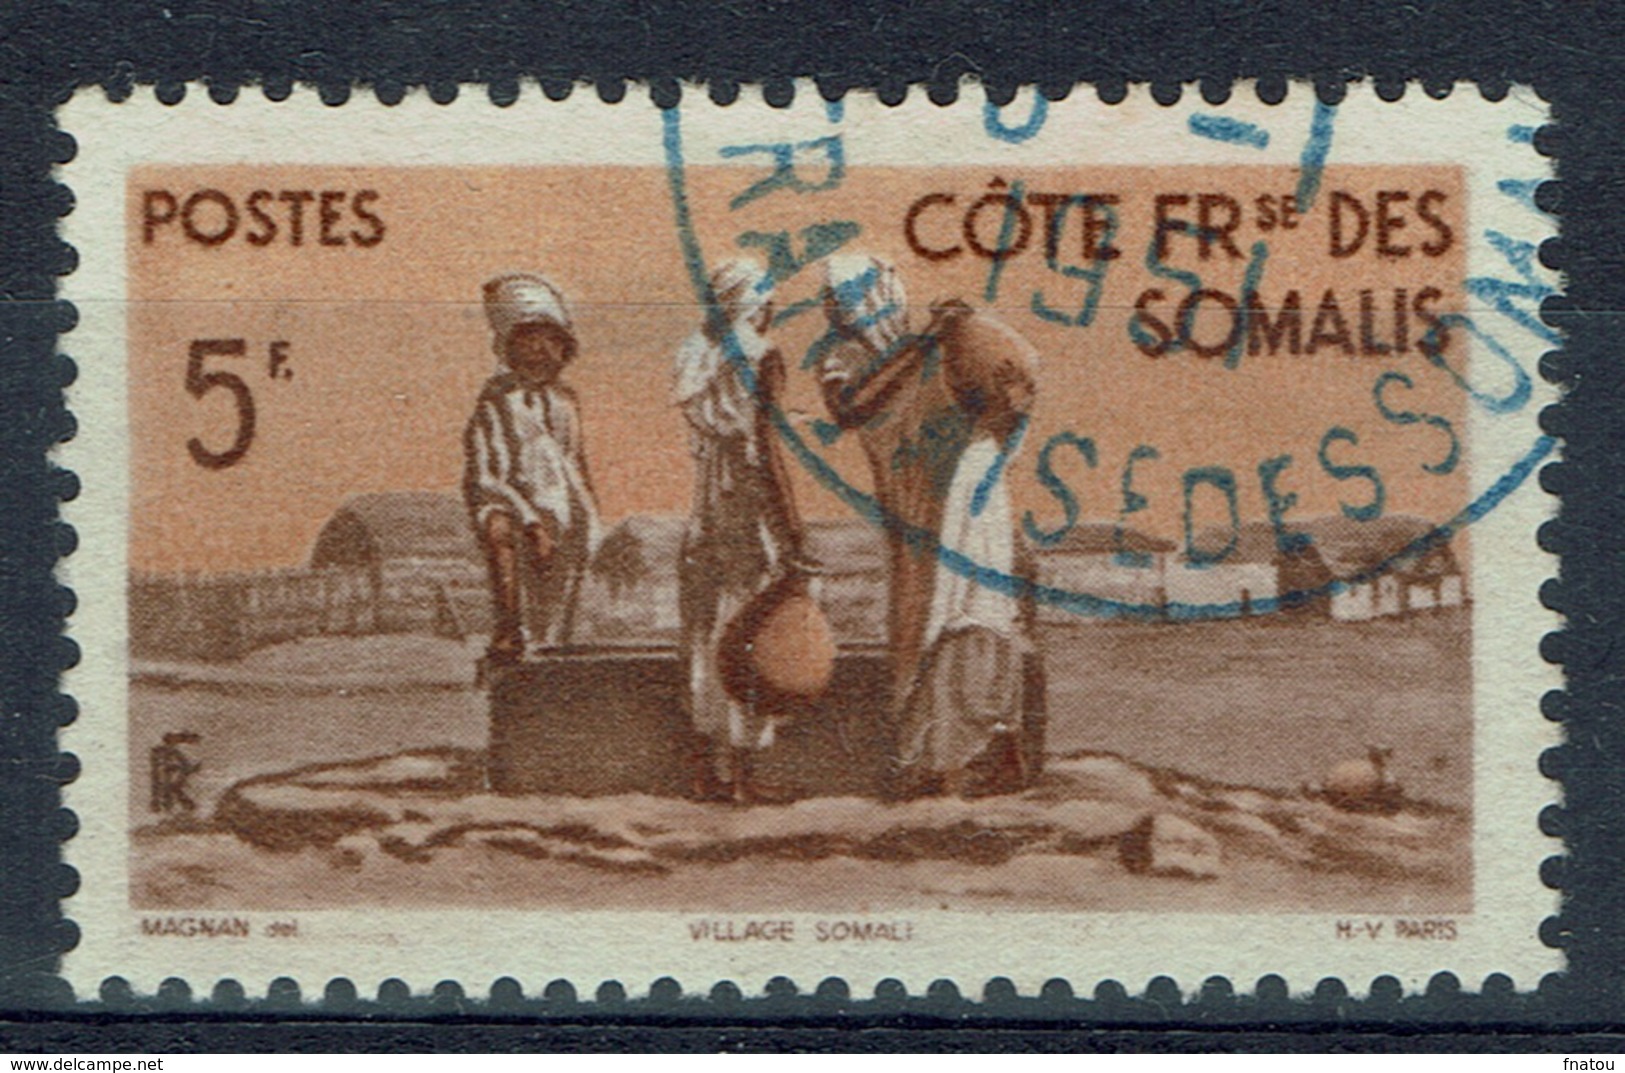 French Somali Coast, 5f., Village And Well, 1947, VFU - Usati